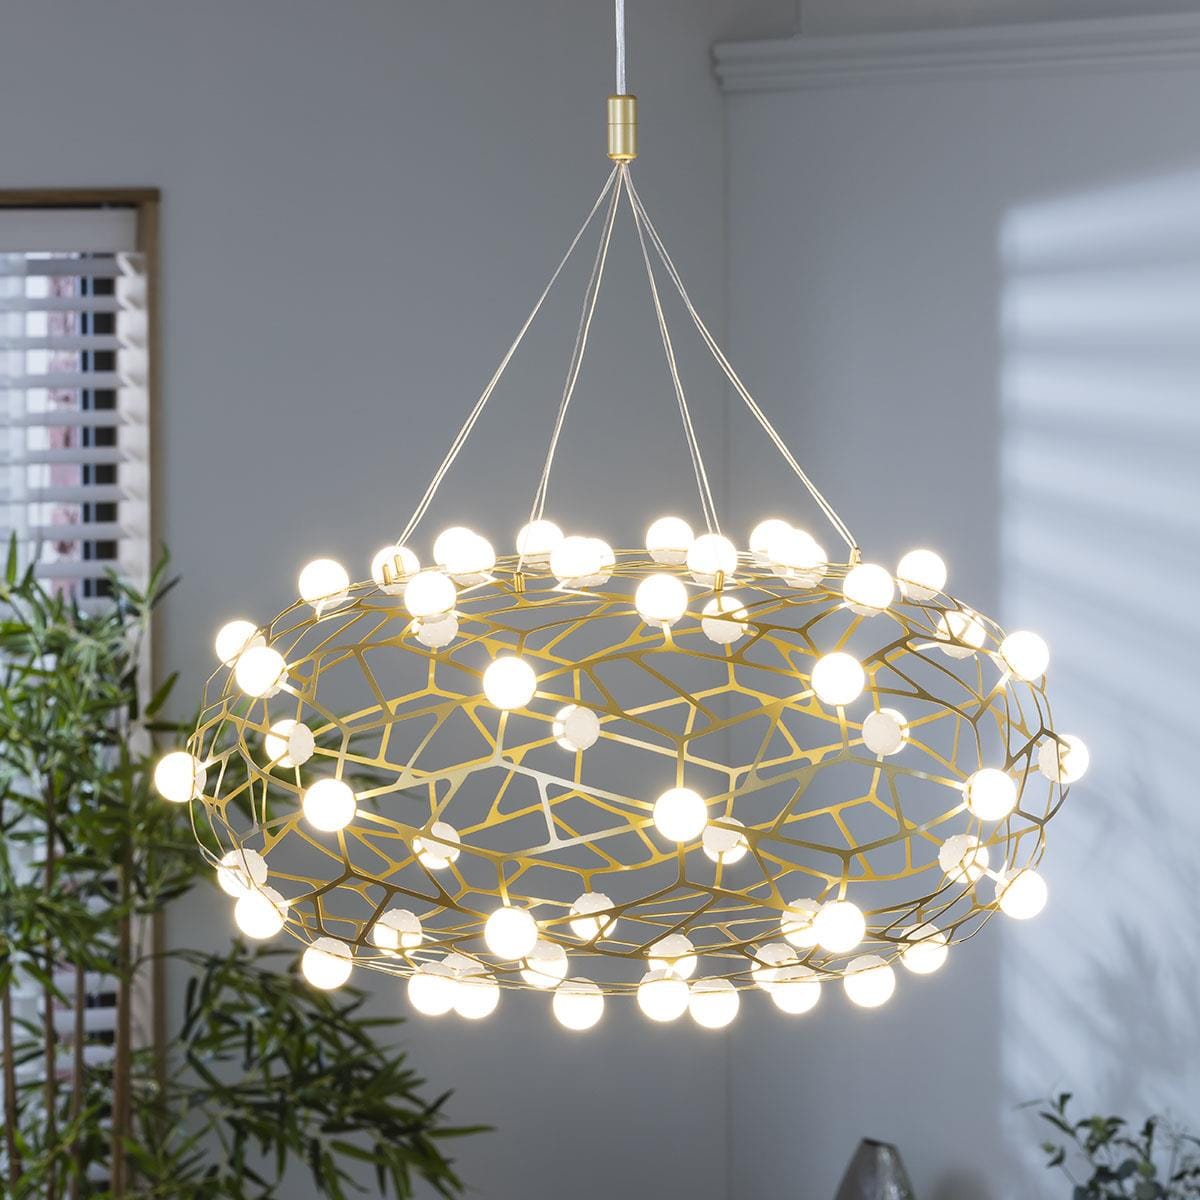 Quatropi Quatropi Geometric Basket Chandelier Ceiling Light - Gold & White 60cm